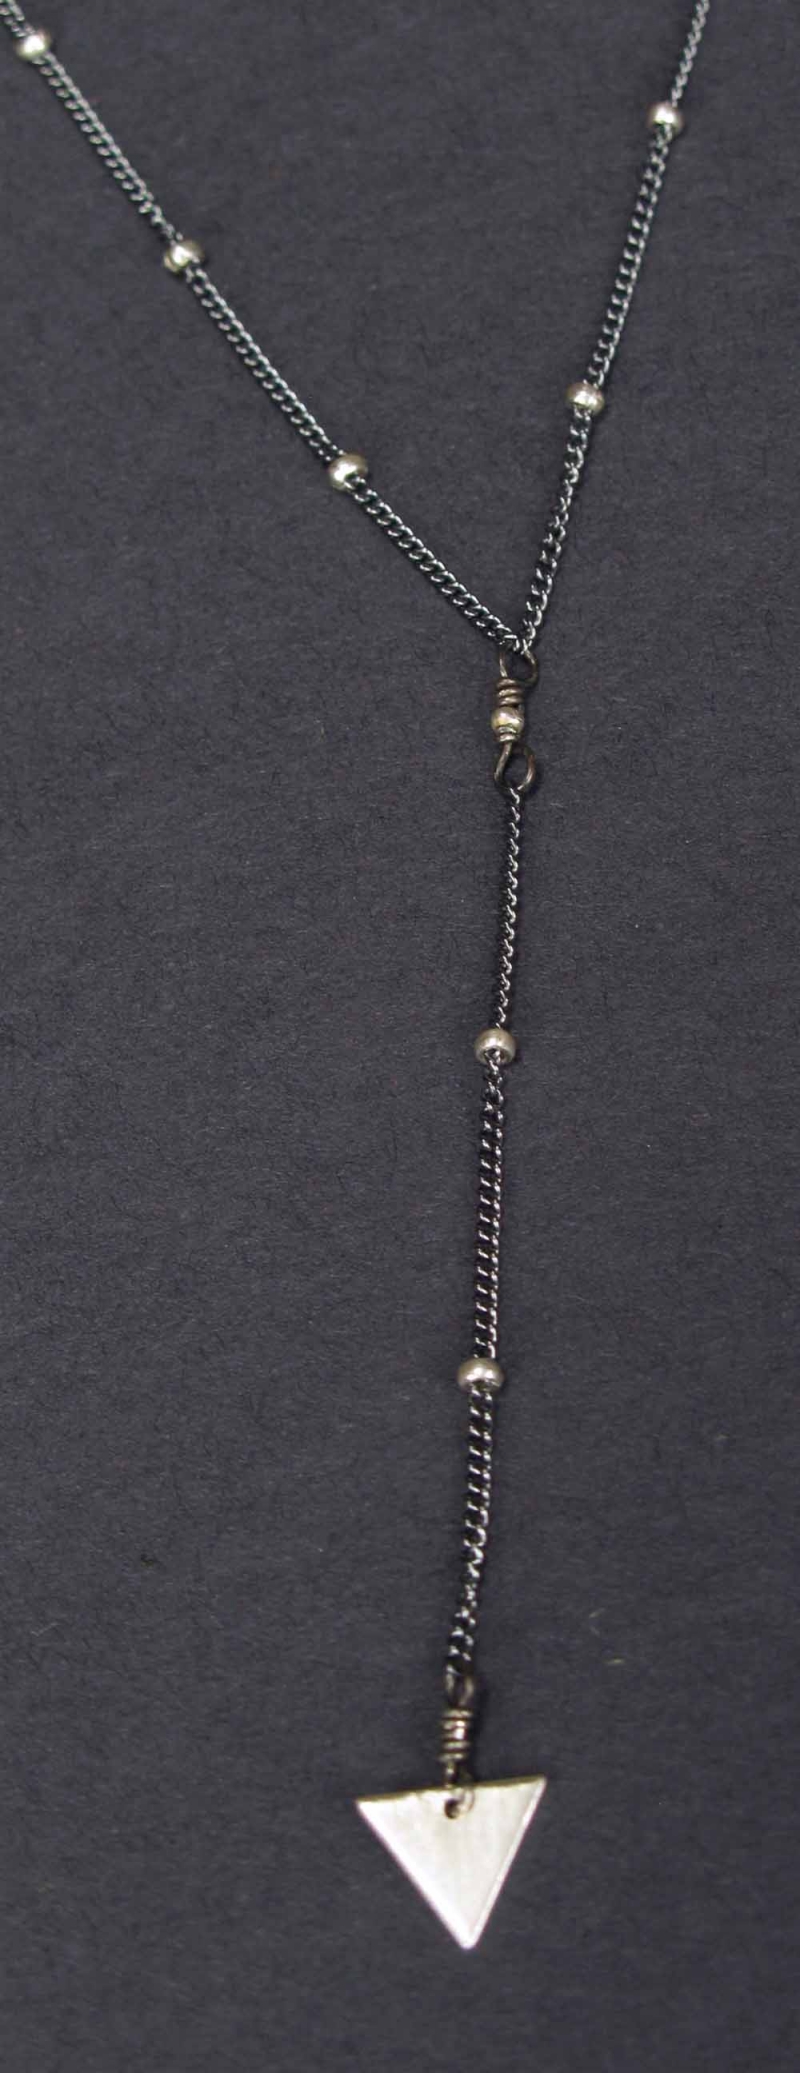 Y Necklace with Silver Arrowhead